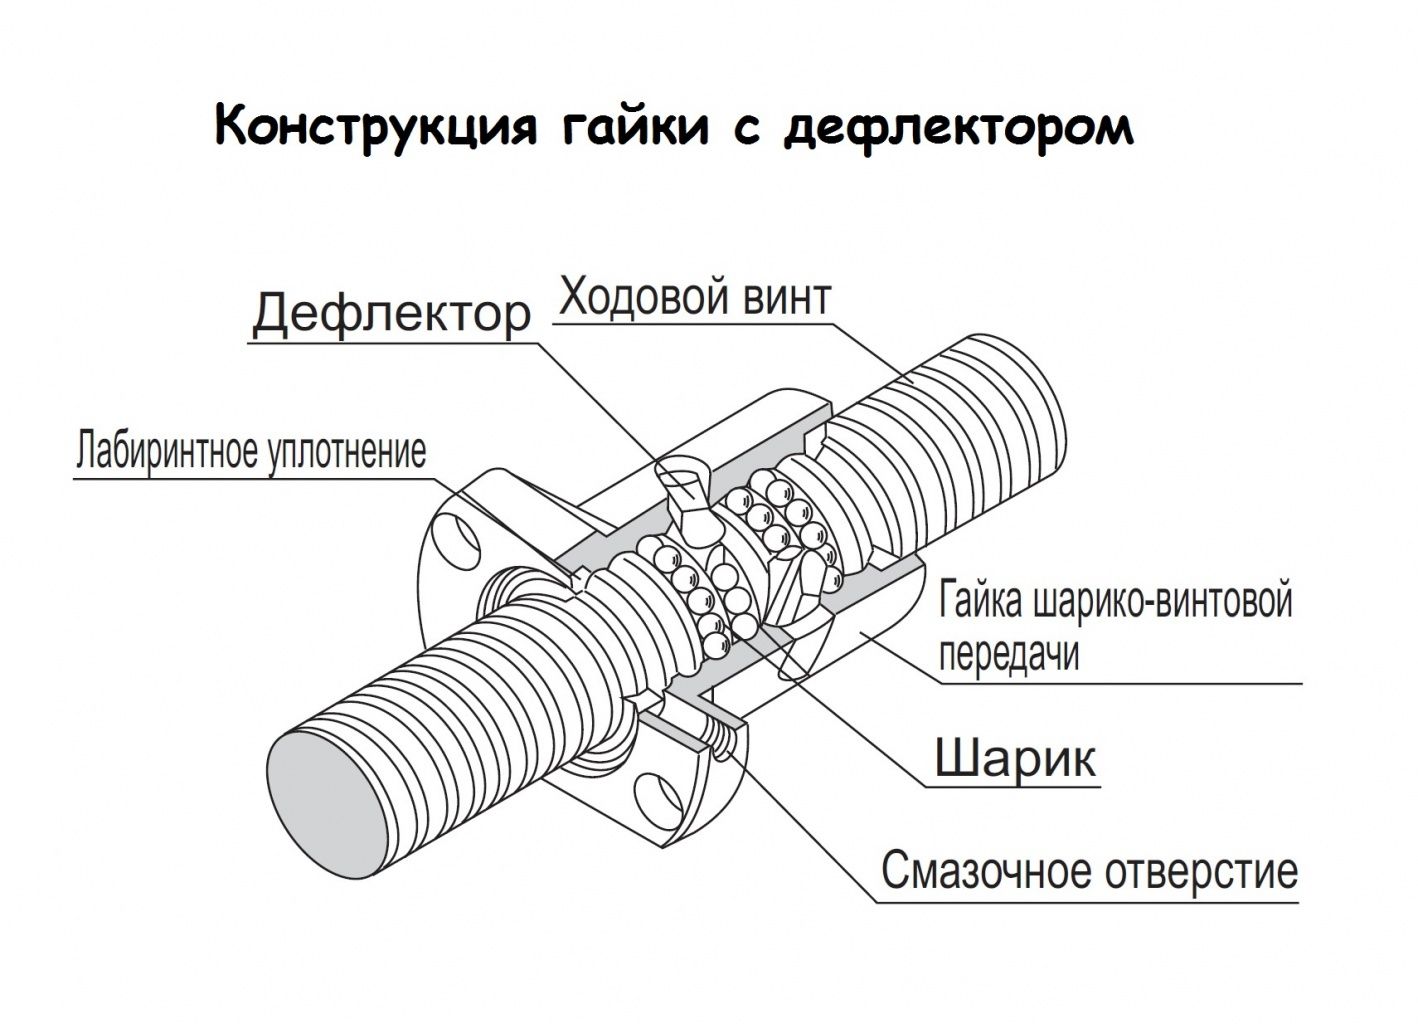 Устройство швп (шариковая винтовая передача) типа sfu1605-1000 в качестве элементов передач чпу станка